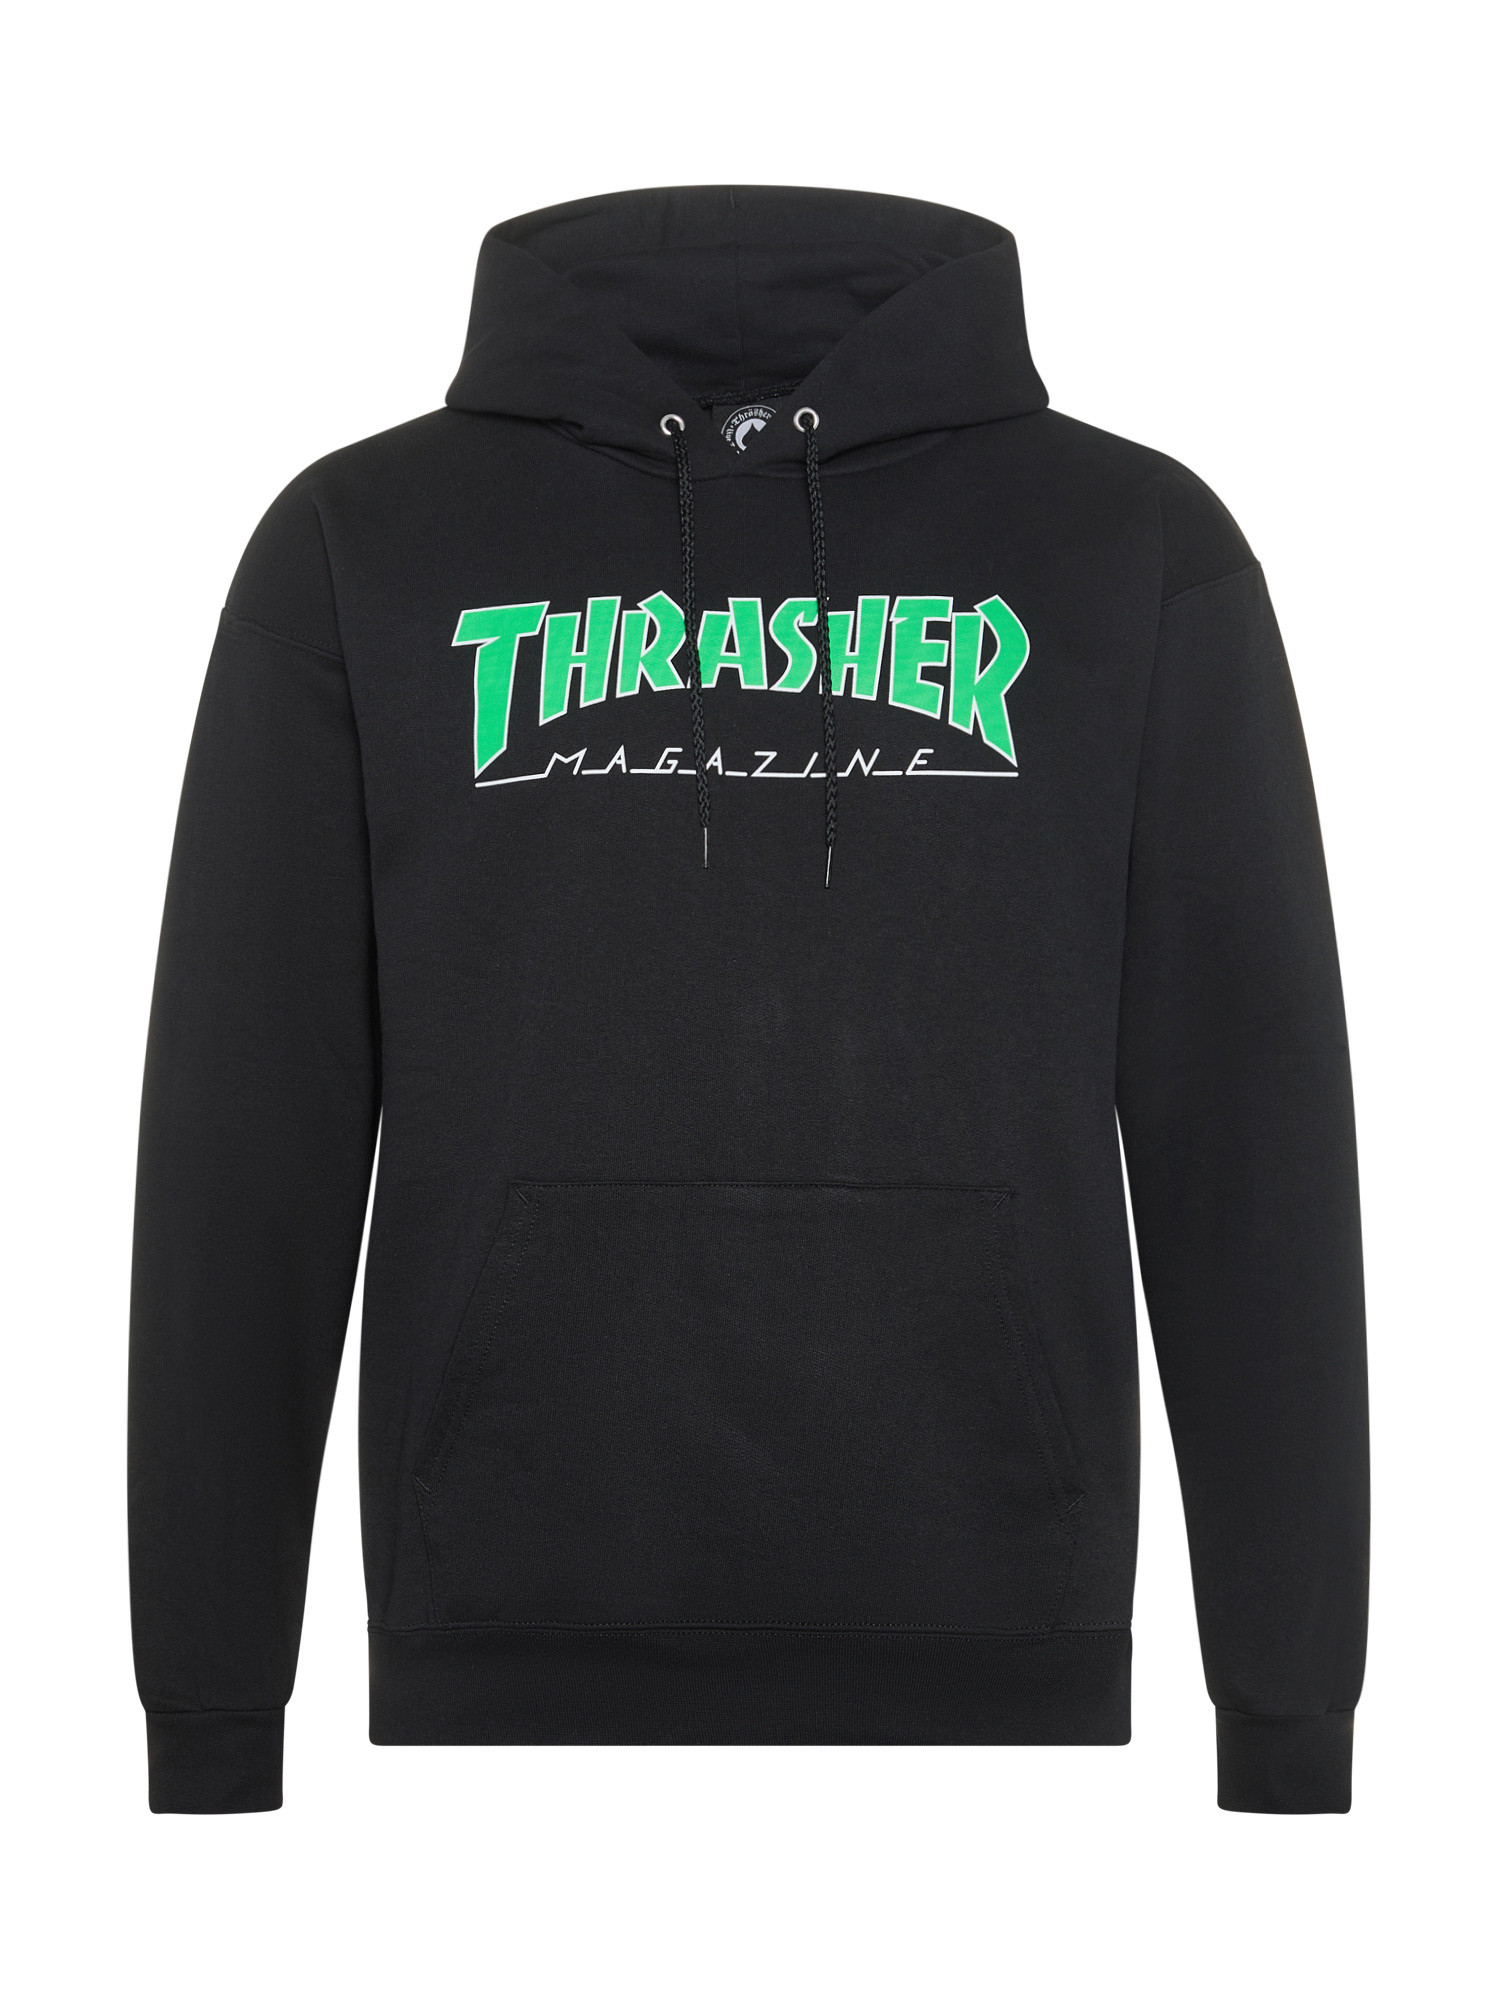 Thrasher - Outlined logo hoodie, Black, large image number 0